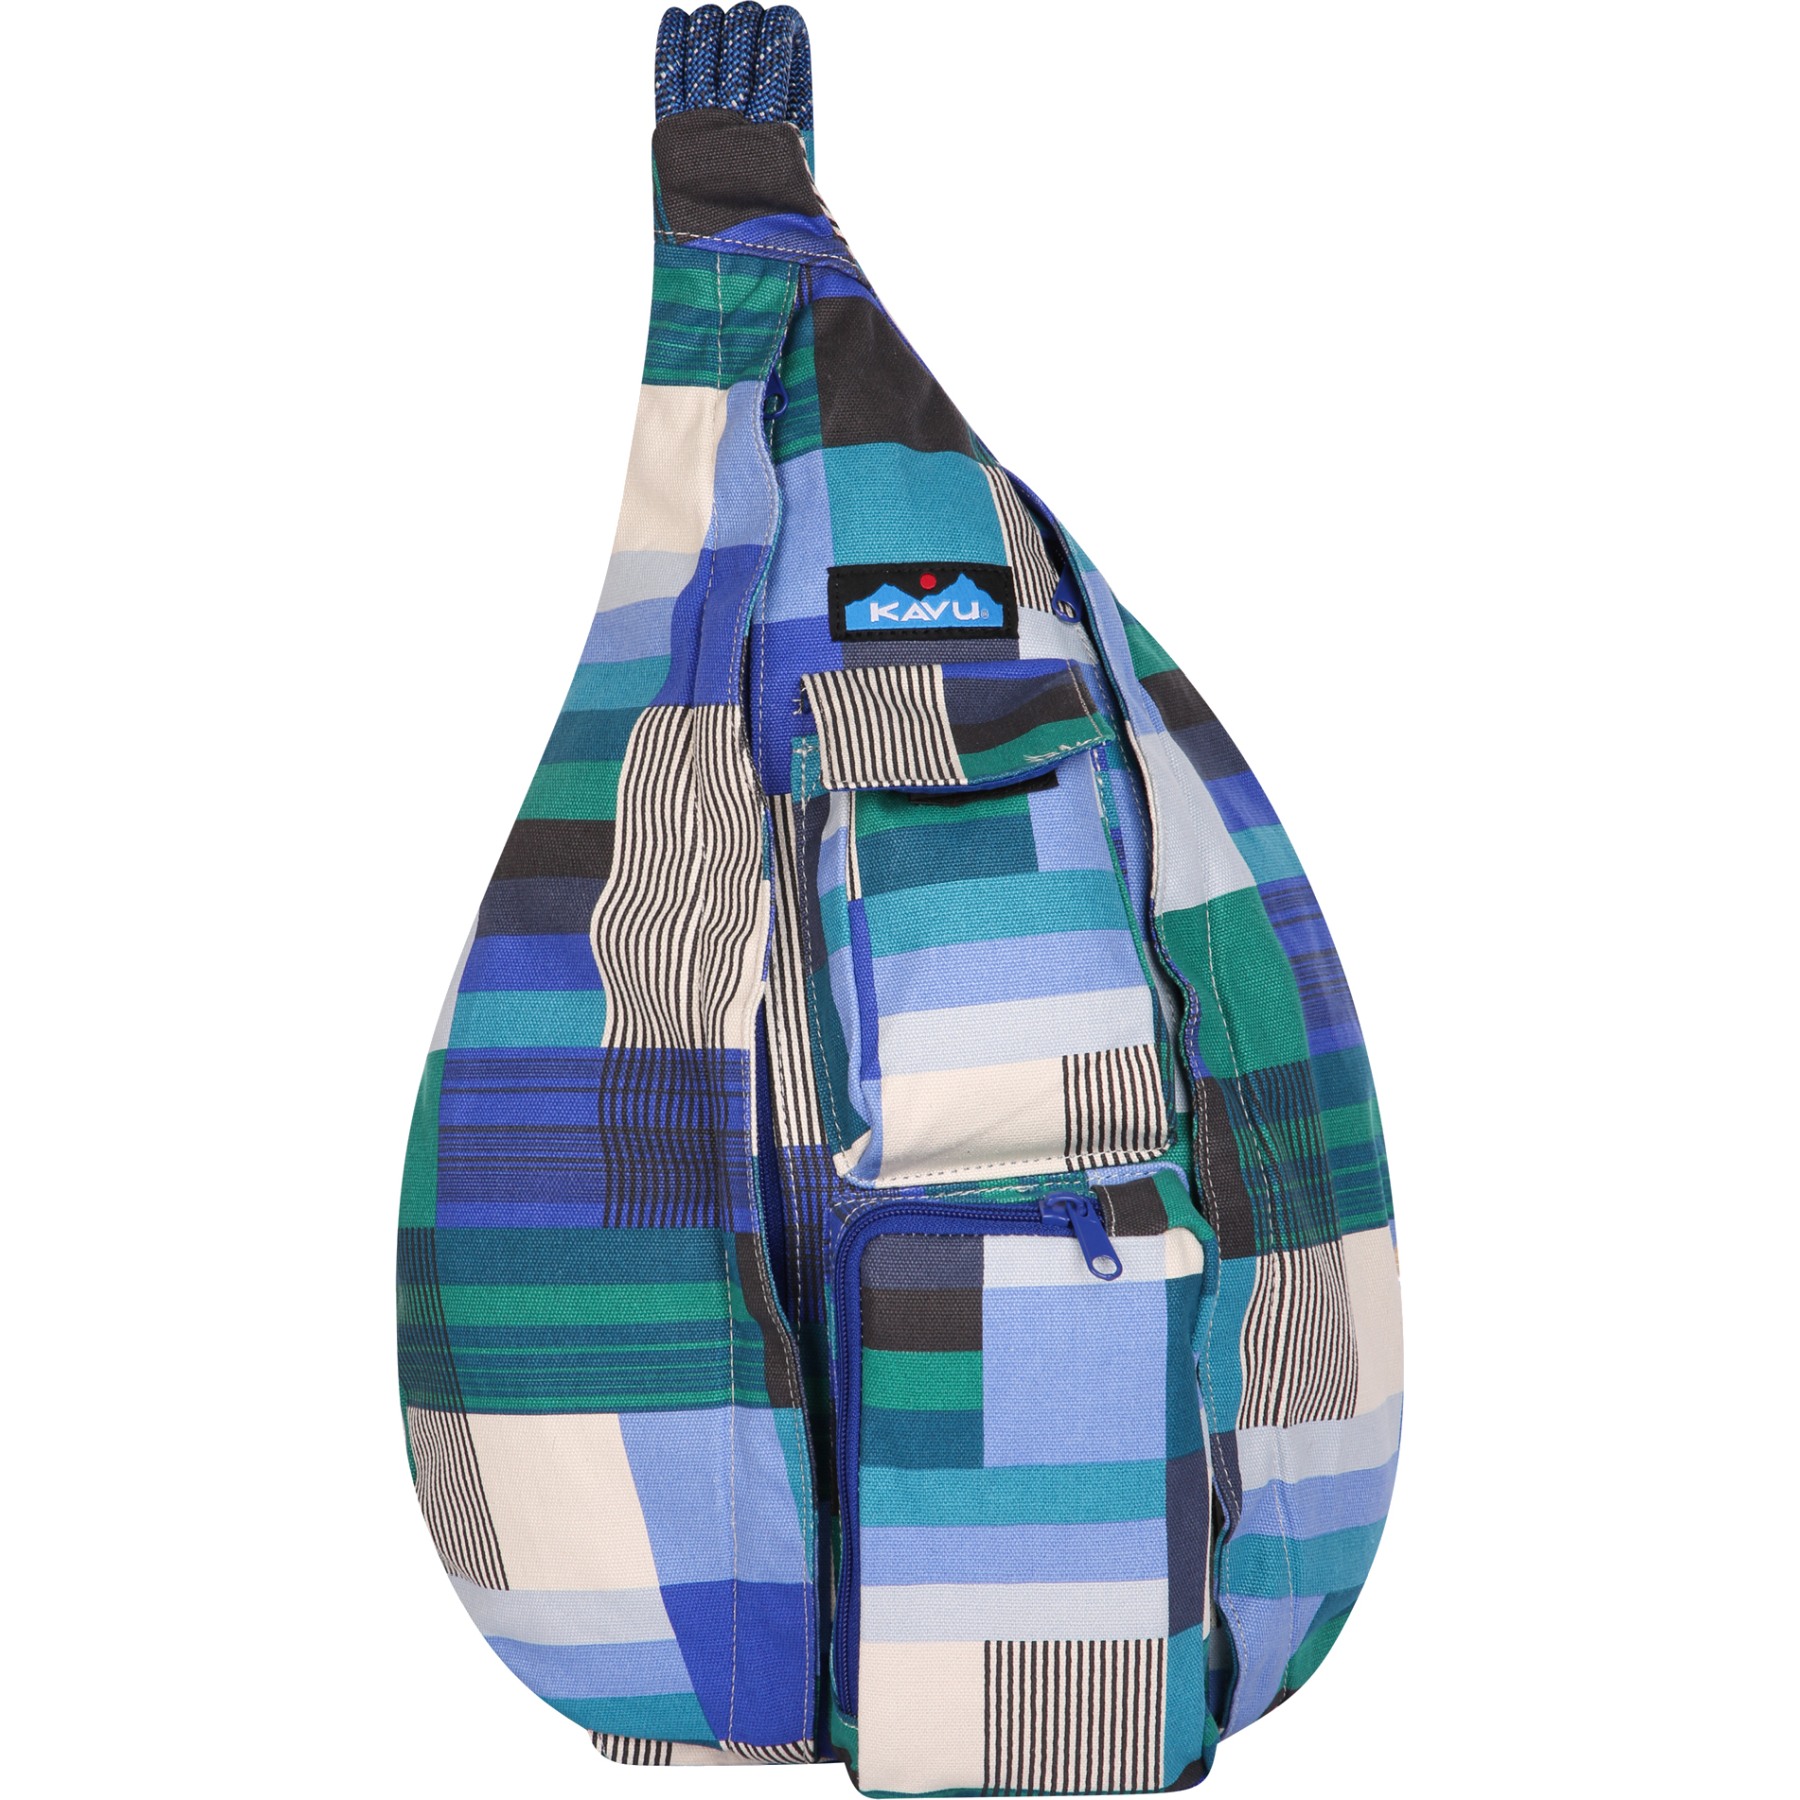 Produktbild von KAVU Rope Tasche 10 L - Bettys Quilt